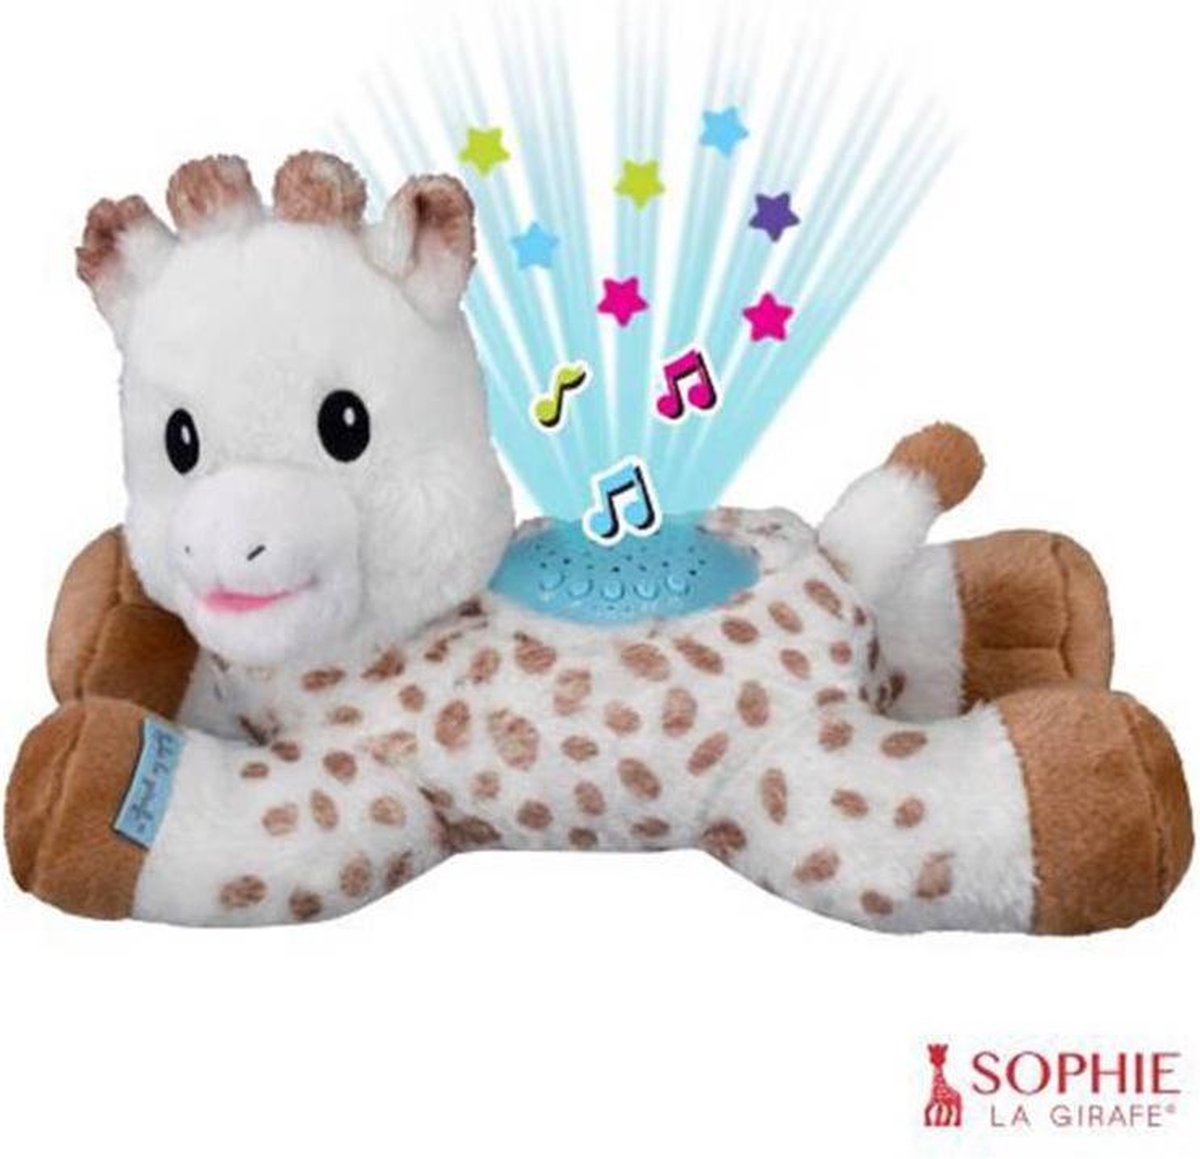 Sophie de giraf Lullaby Light & Dreams knuffel - Sterrenprojector - Muziekfunctie met 15 melodieën - Met volumeregeling - Automatische uitschakeling - Inclusief batterijen - 32x17x20 cm - Sophie de Giraf